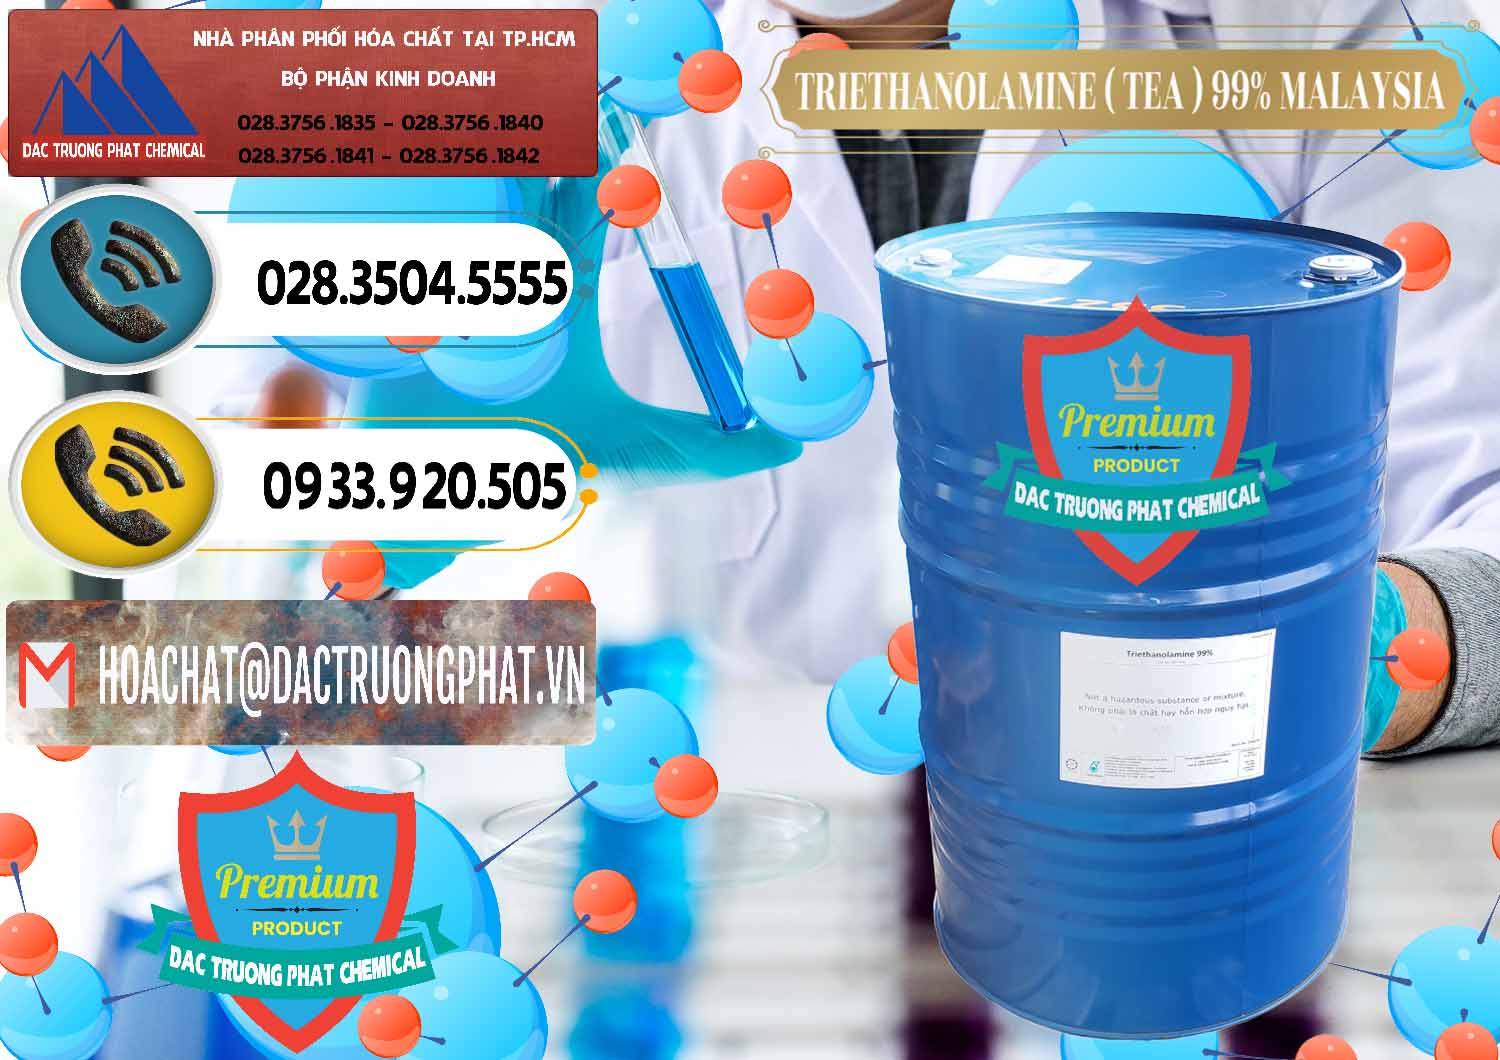 Công ty kinh doanh & bán TEA - Triethanolamine 99% Mã Lai Malaysia - 0323 - Cty phân phối và nhập khẩu hóa chất tại TP.HCM - hoachatdetnhuom.vn